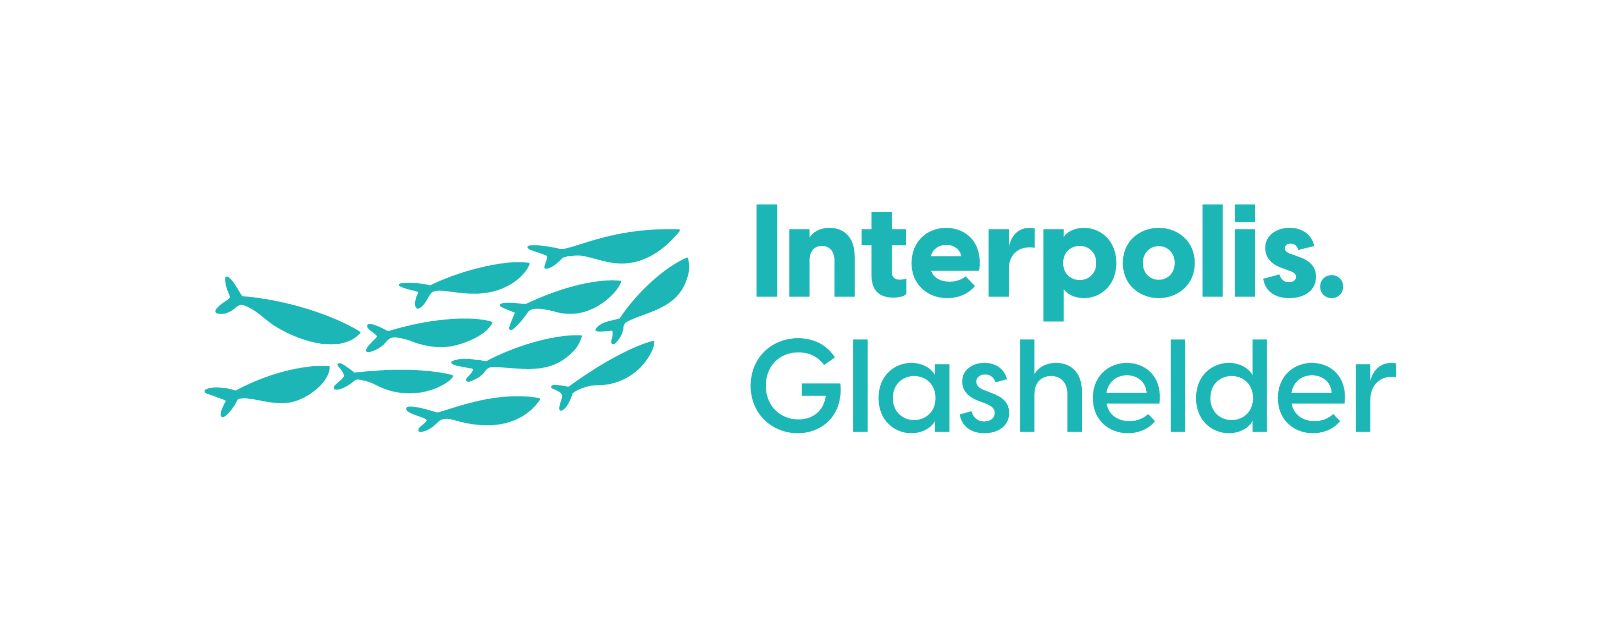 Interpolis logo